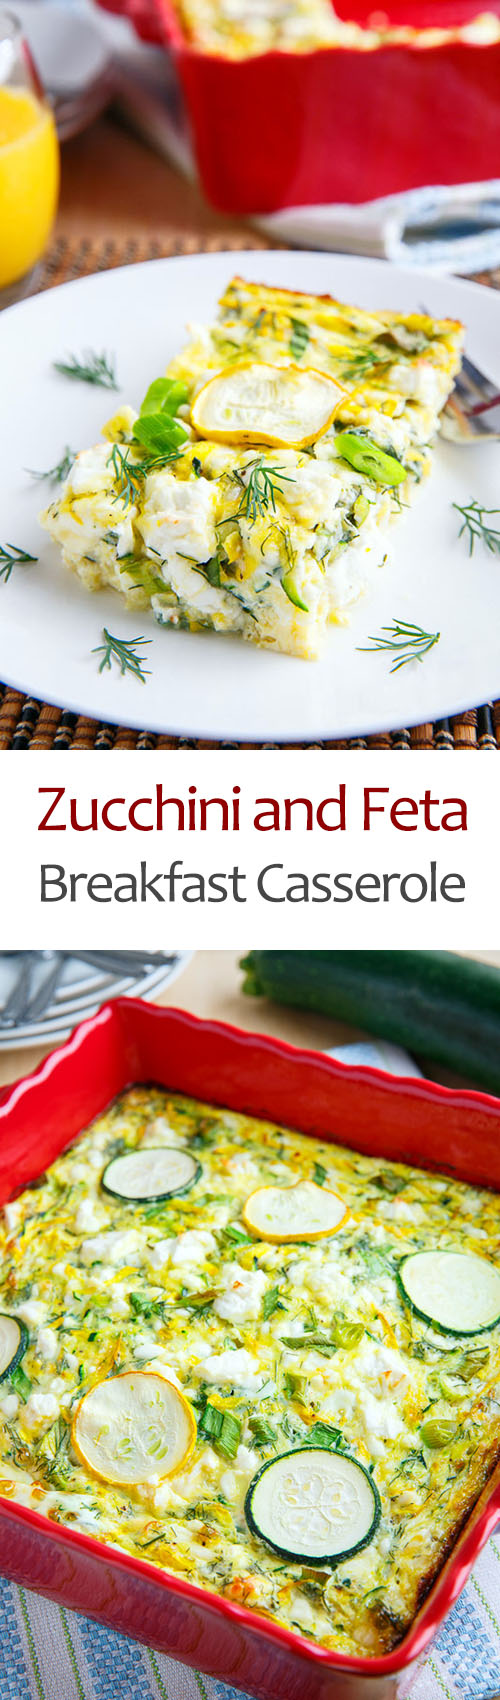 Zucchini and Feta Breakfast Casserole